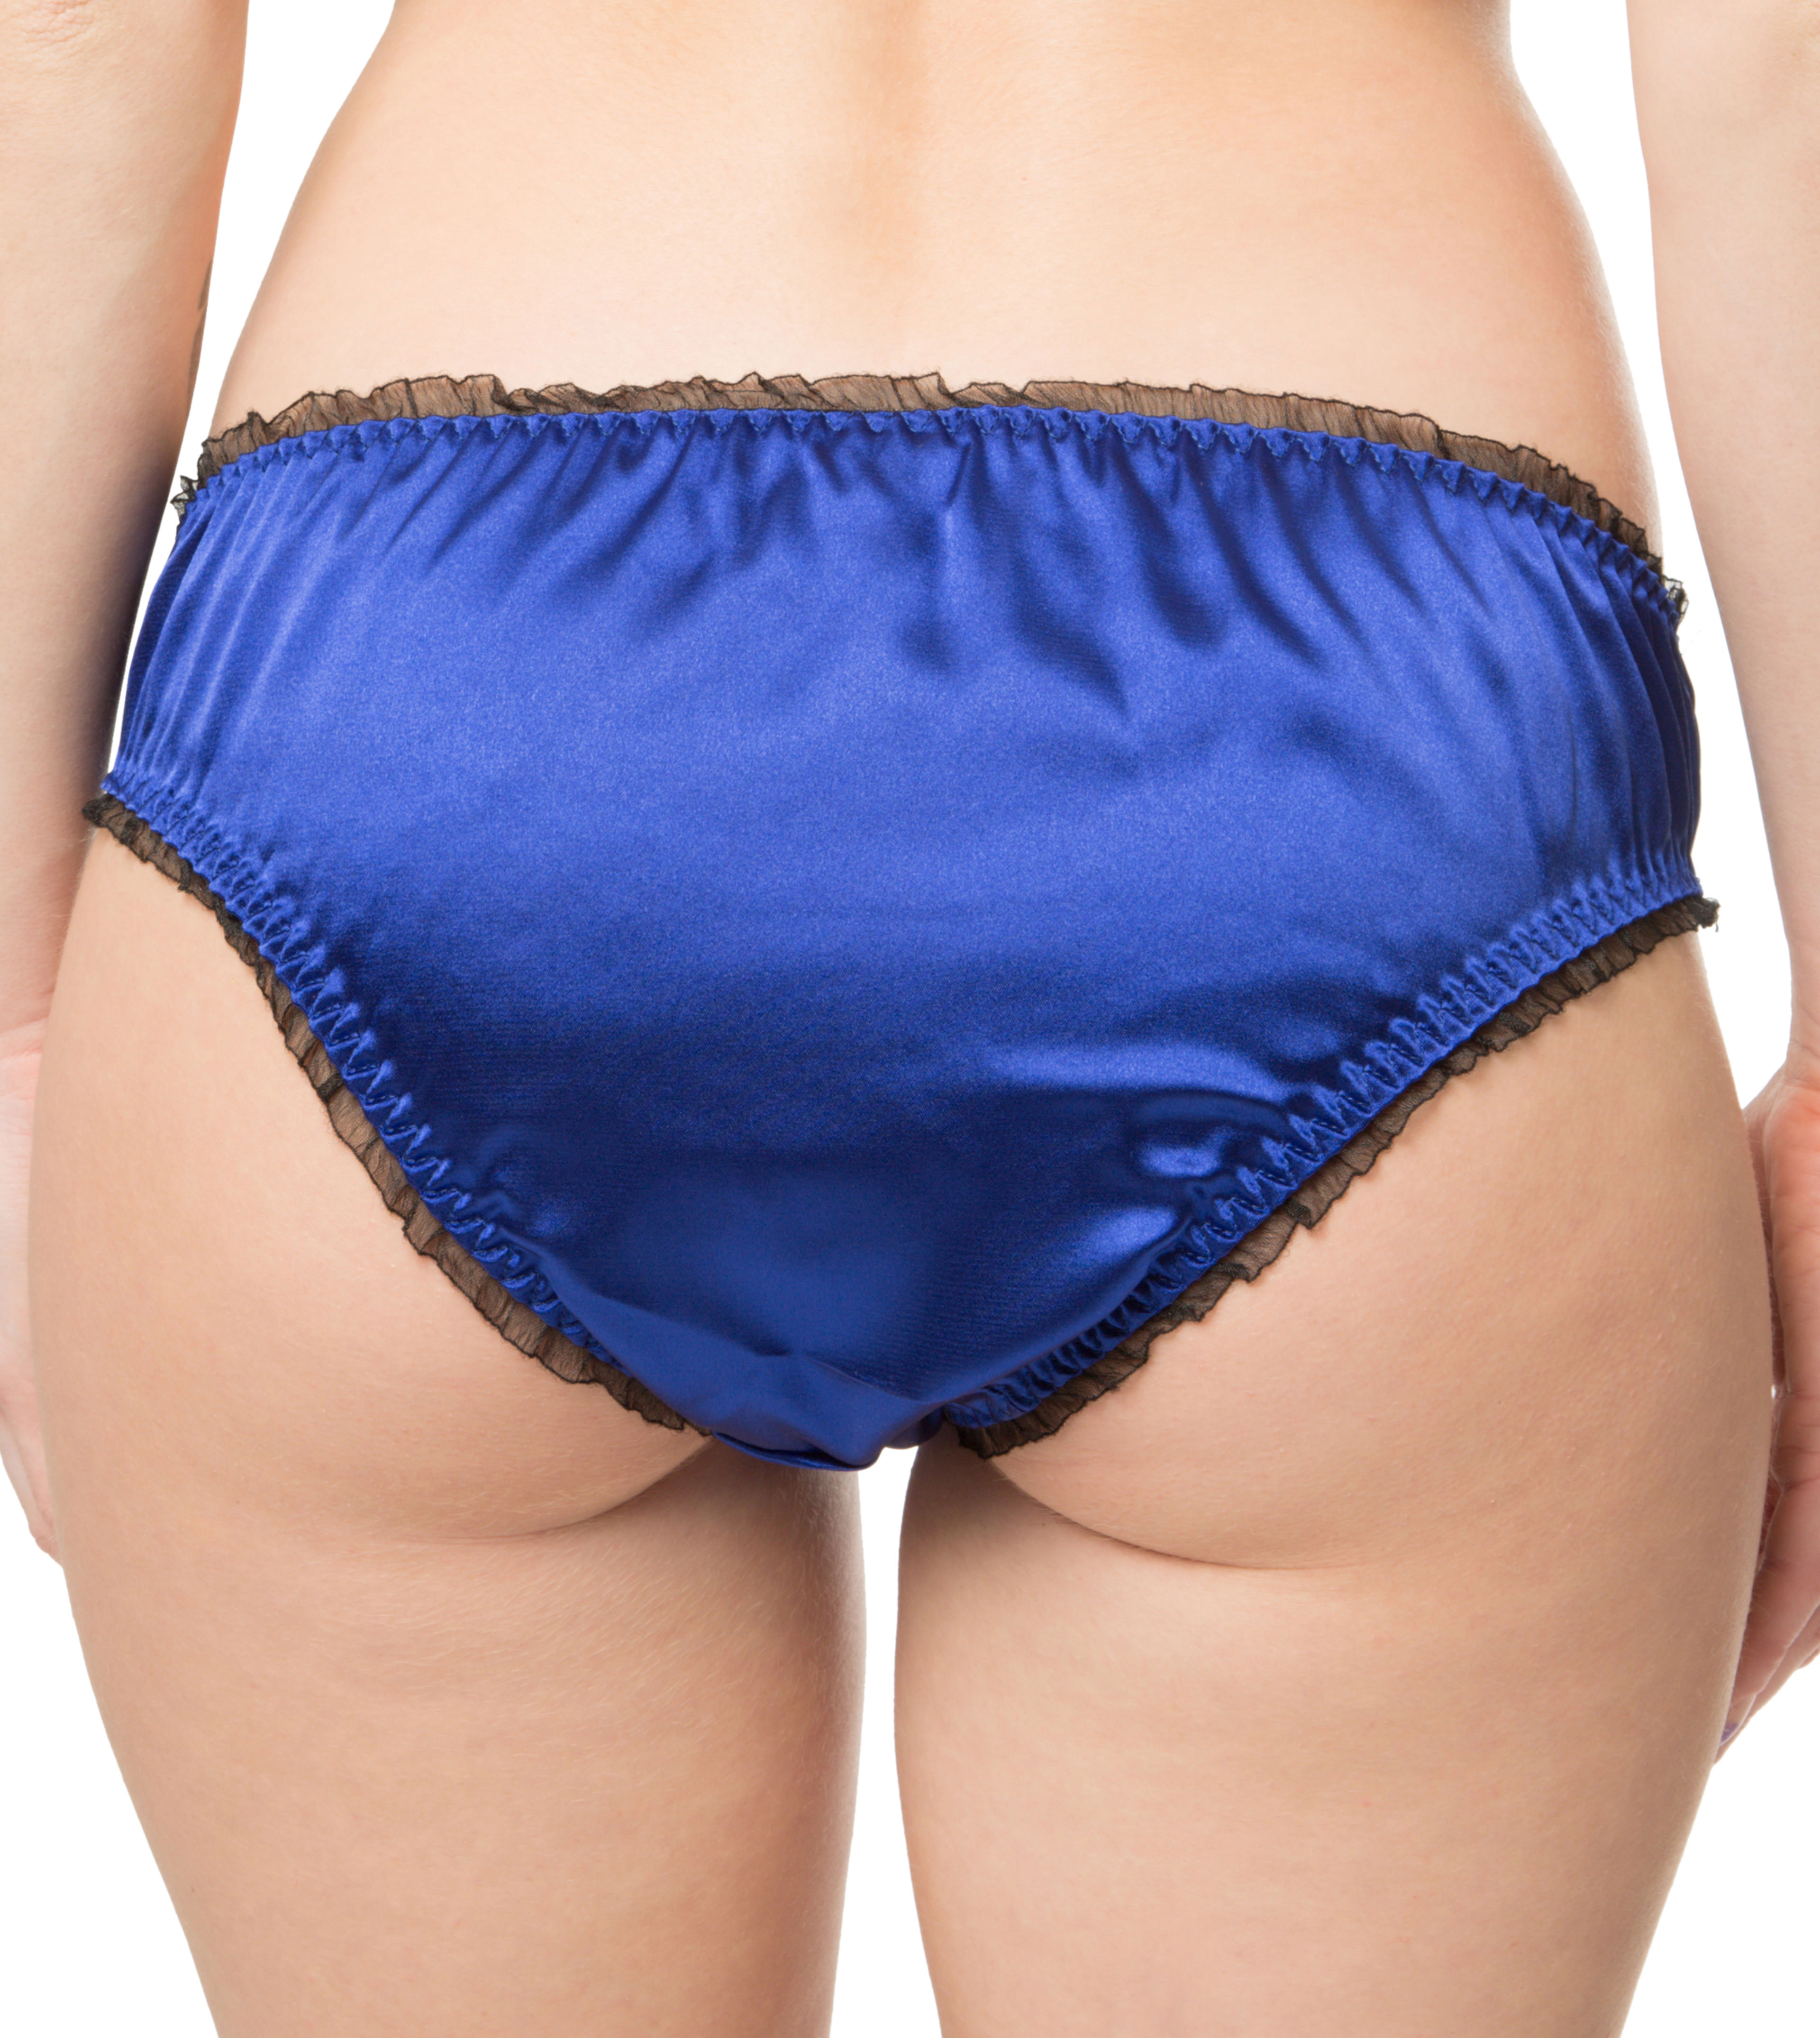 Satin Frilly Sissy Panties Bikini Knicker Underwear Briefs Uk Size Ebay